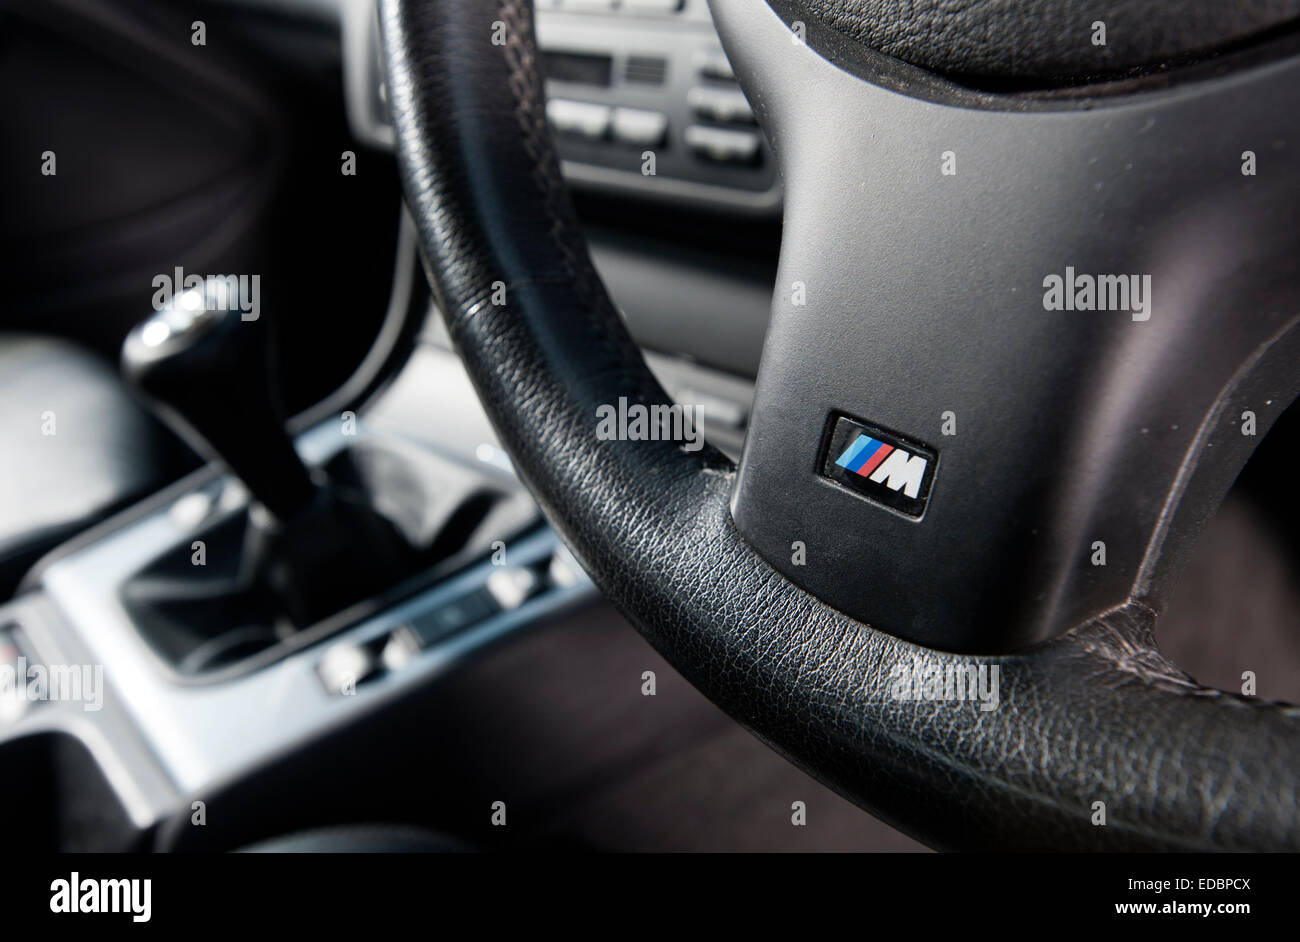 BMW M Sport-Lenkrad und manuelle Getriebe Stick in einem E46 3-Serie-Auto  Stockfotografie - Alamy